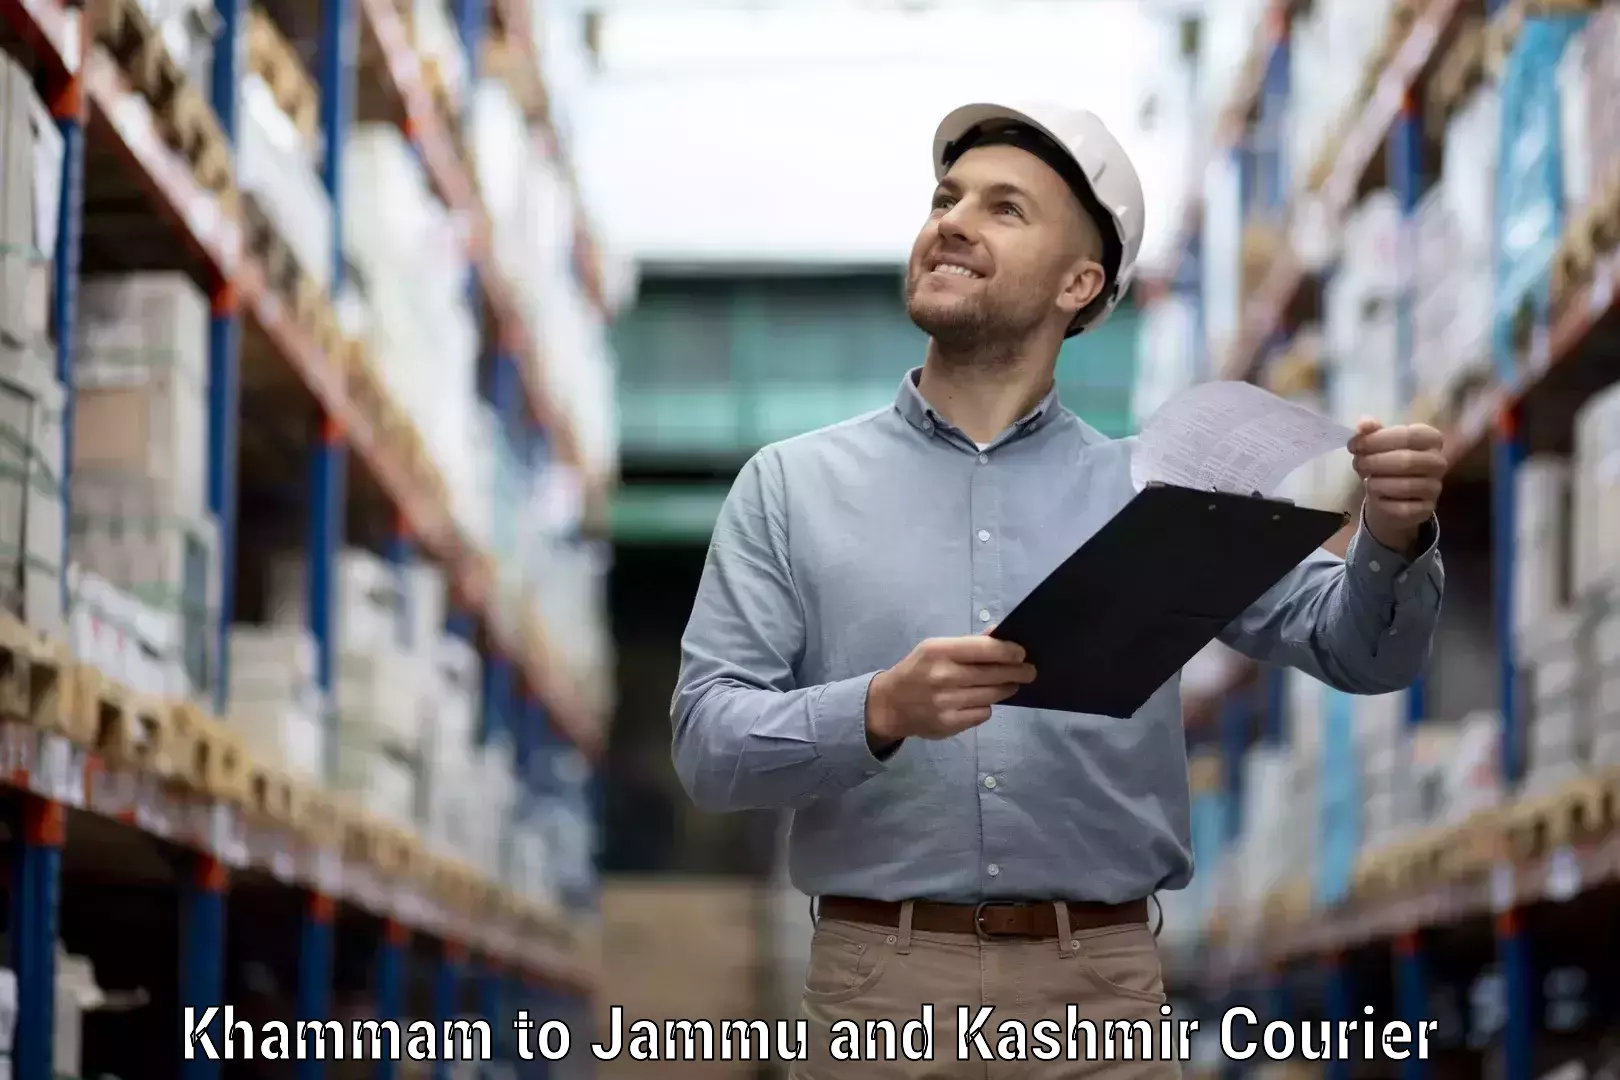 Courier service comparison Khammam to Katra